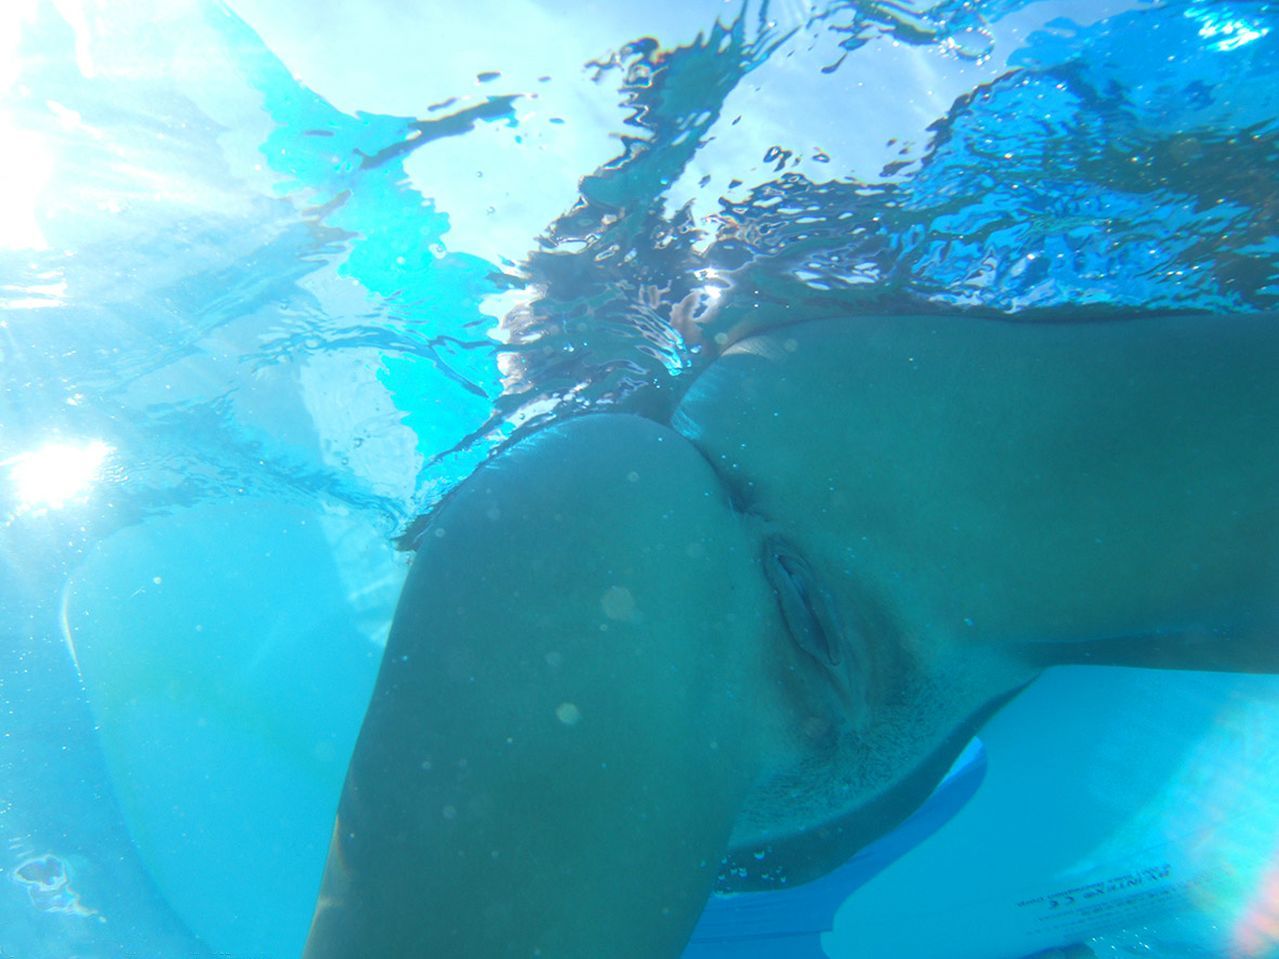 голая раскрытая вульва девушки под водой, фото голой женщины - обои для рабочего стола